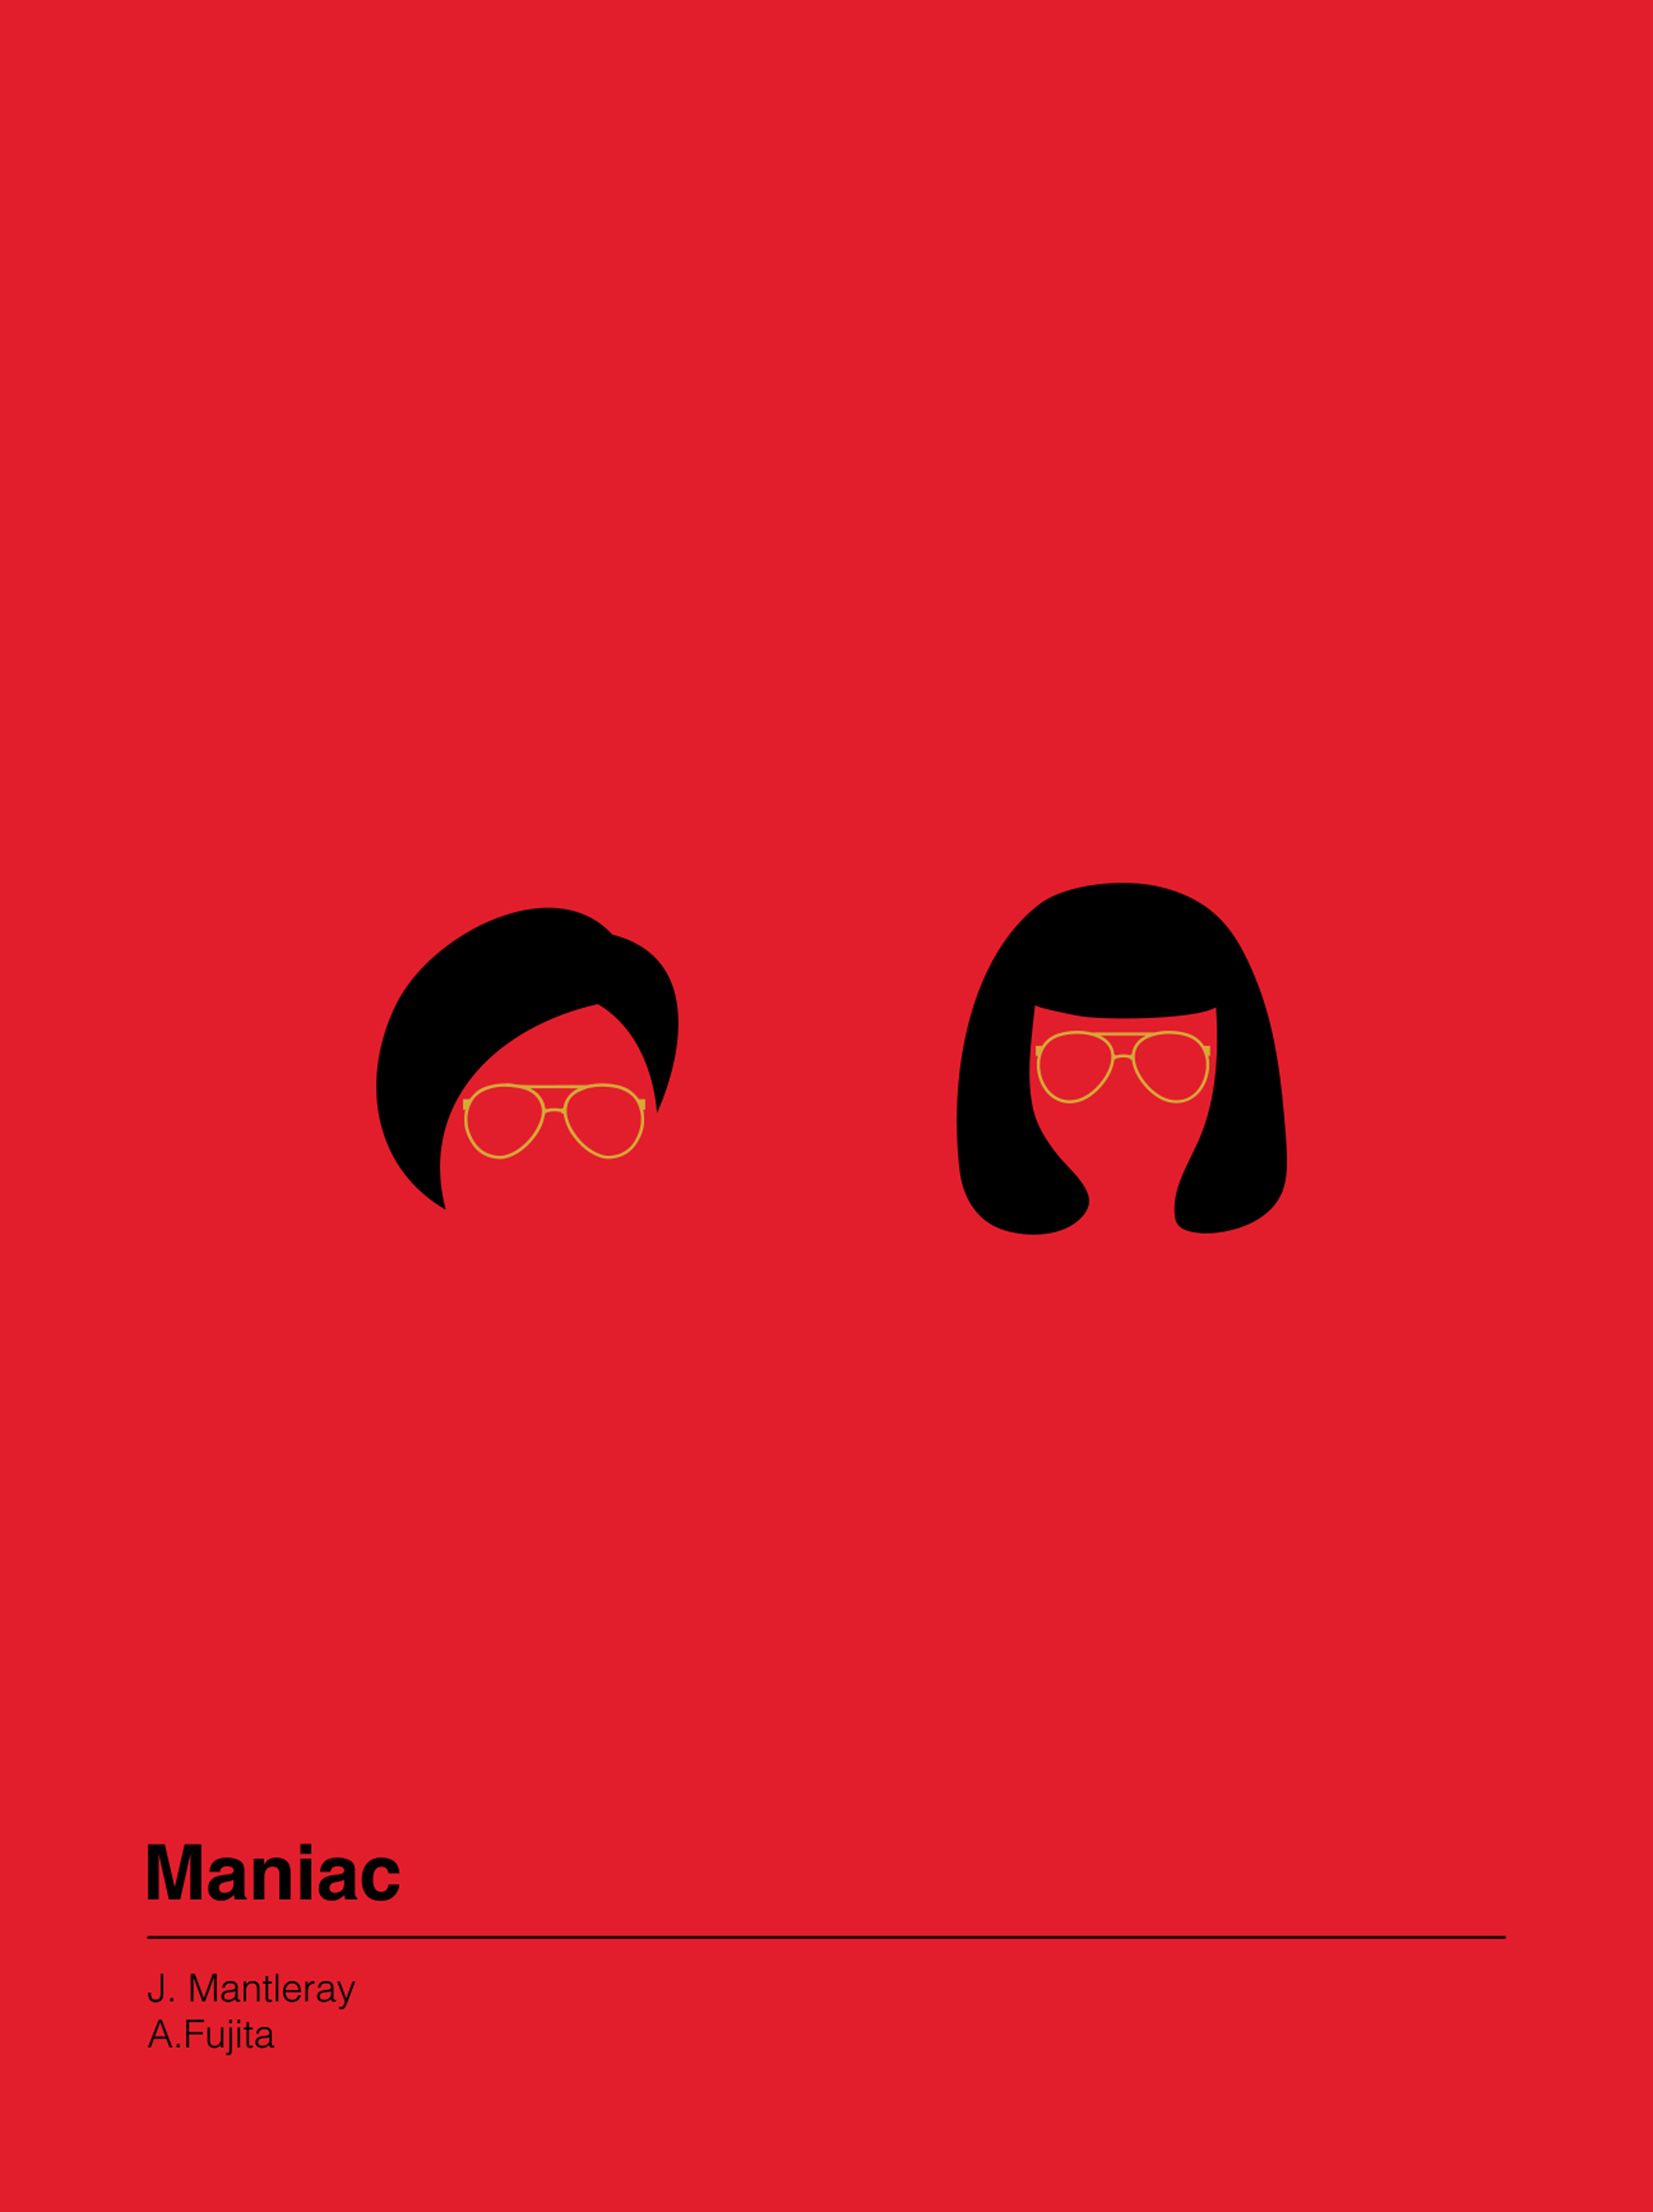 Maniac Netflix Wallpaper